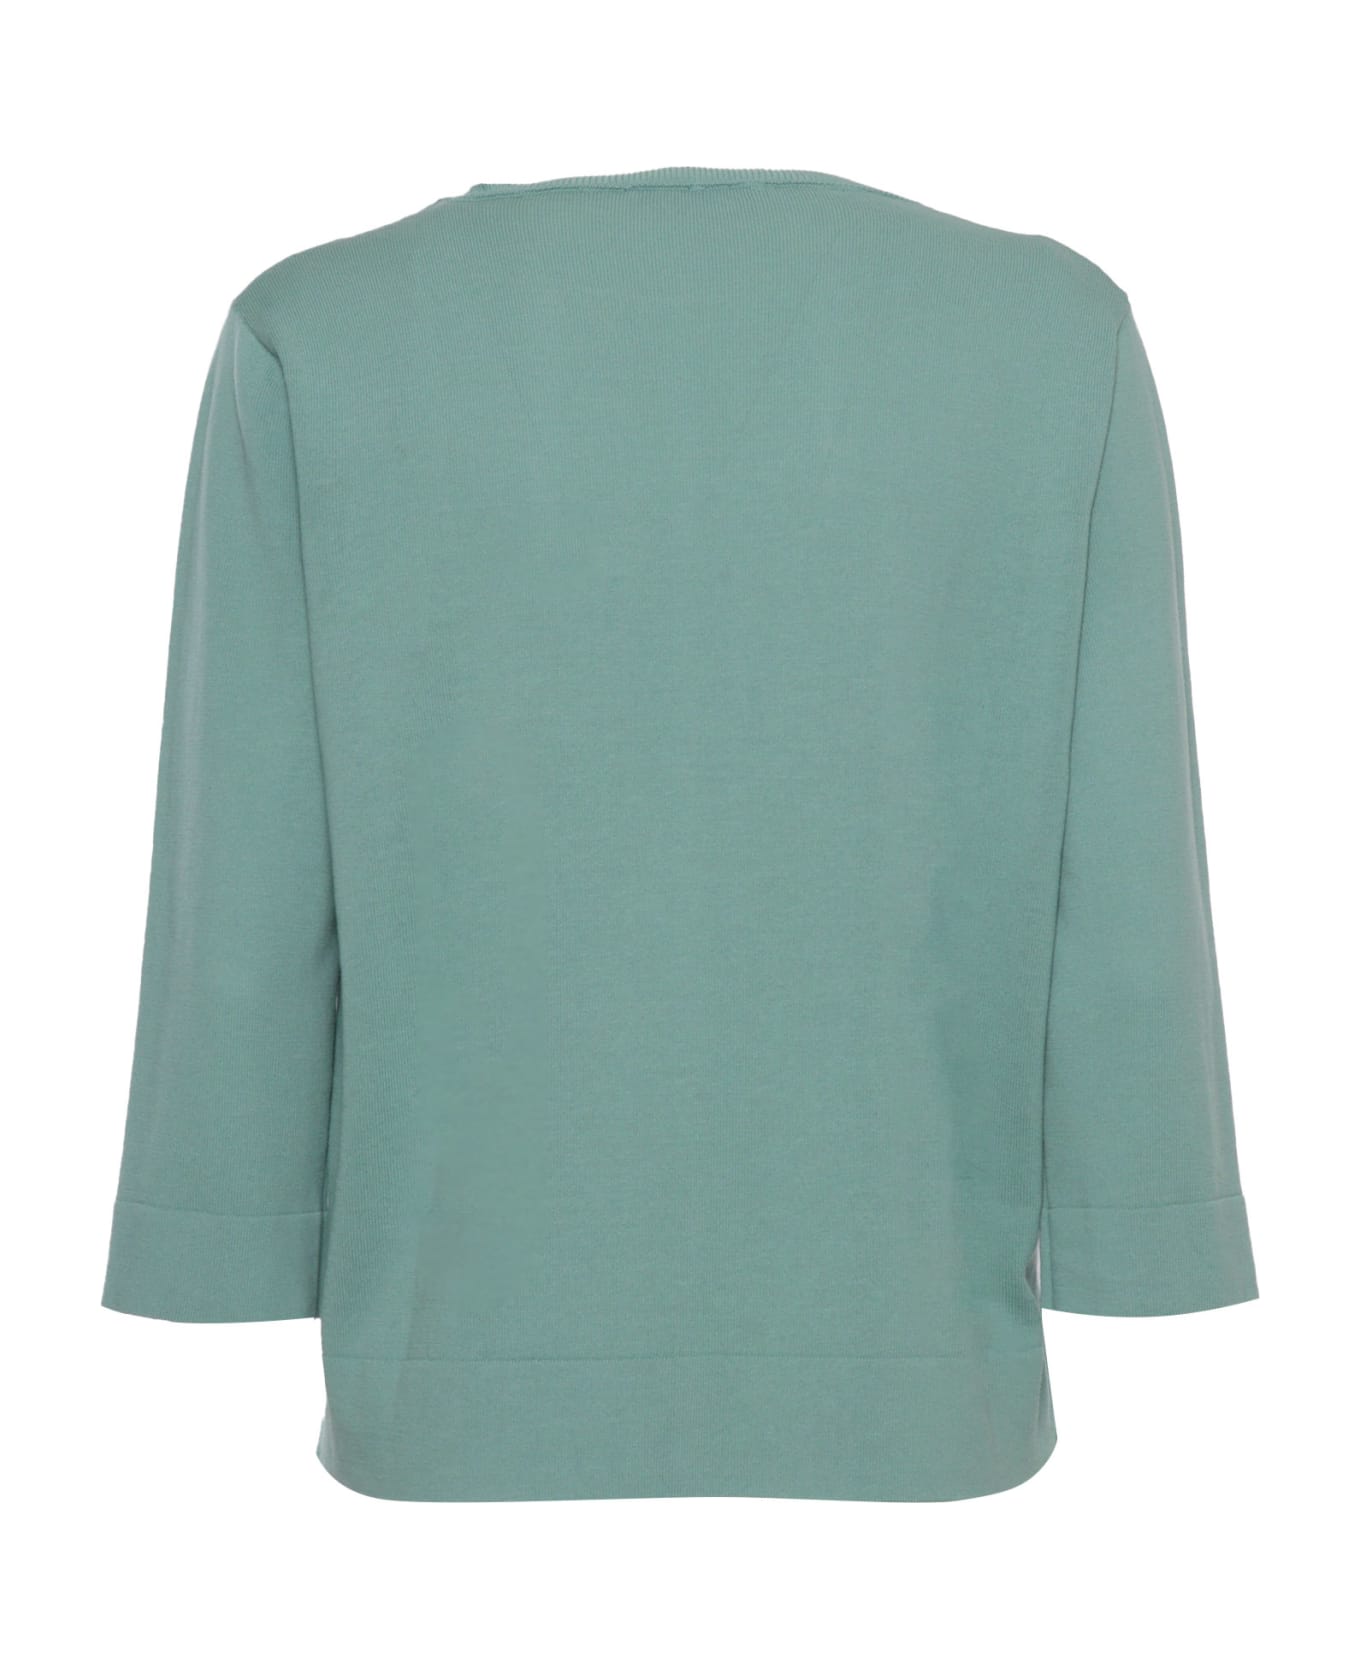 Kangra Aqua Green Cotton Sweater - LIGHT BLUE